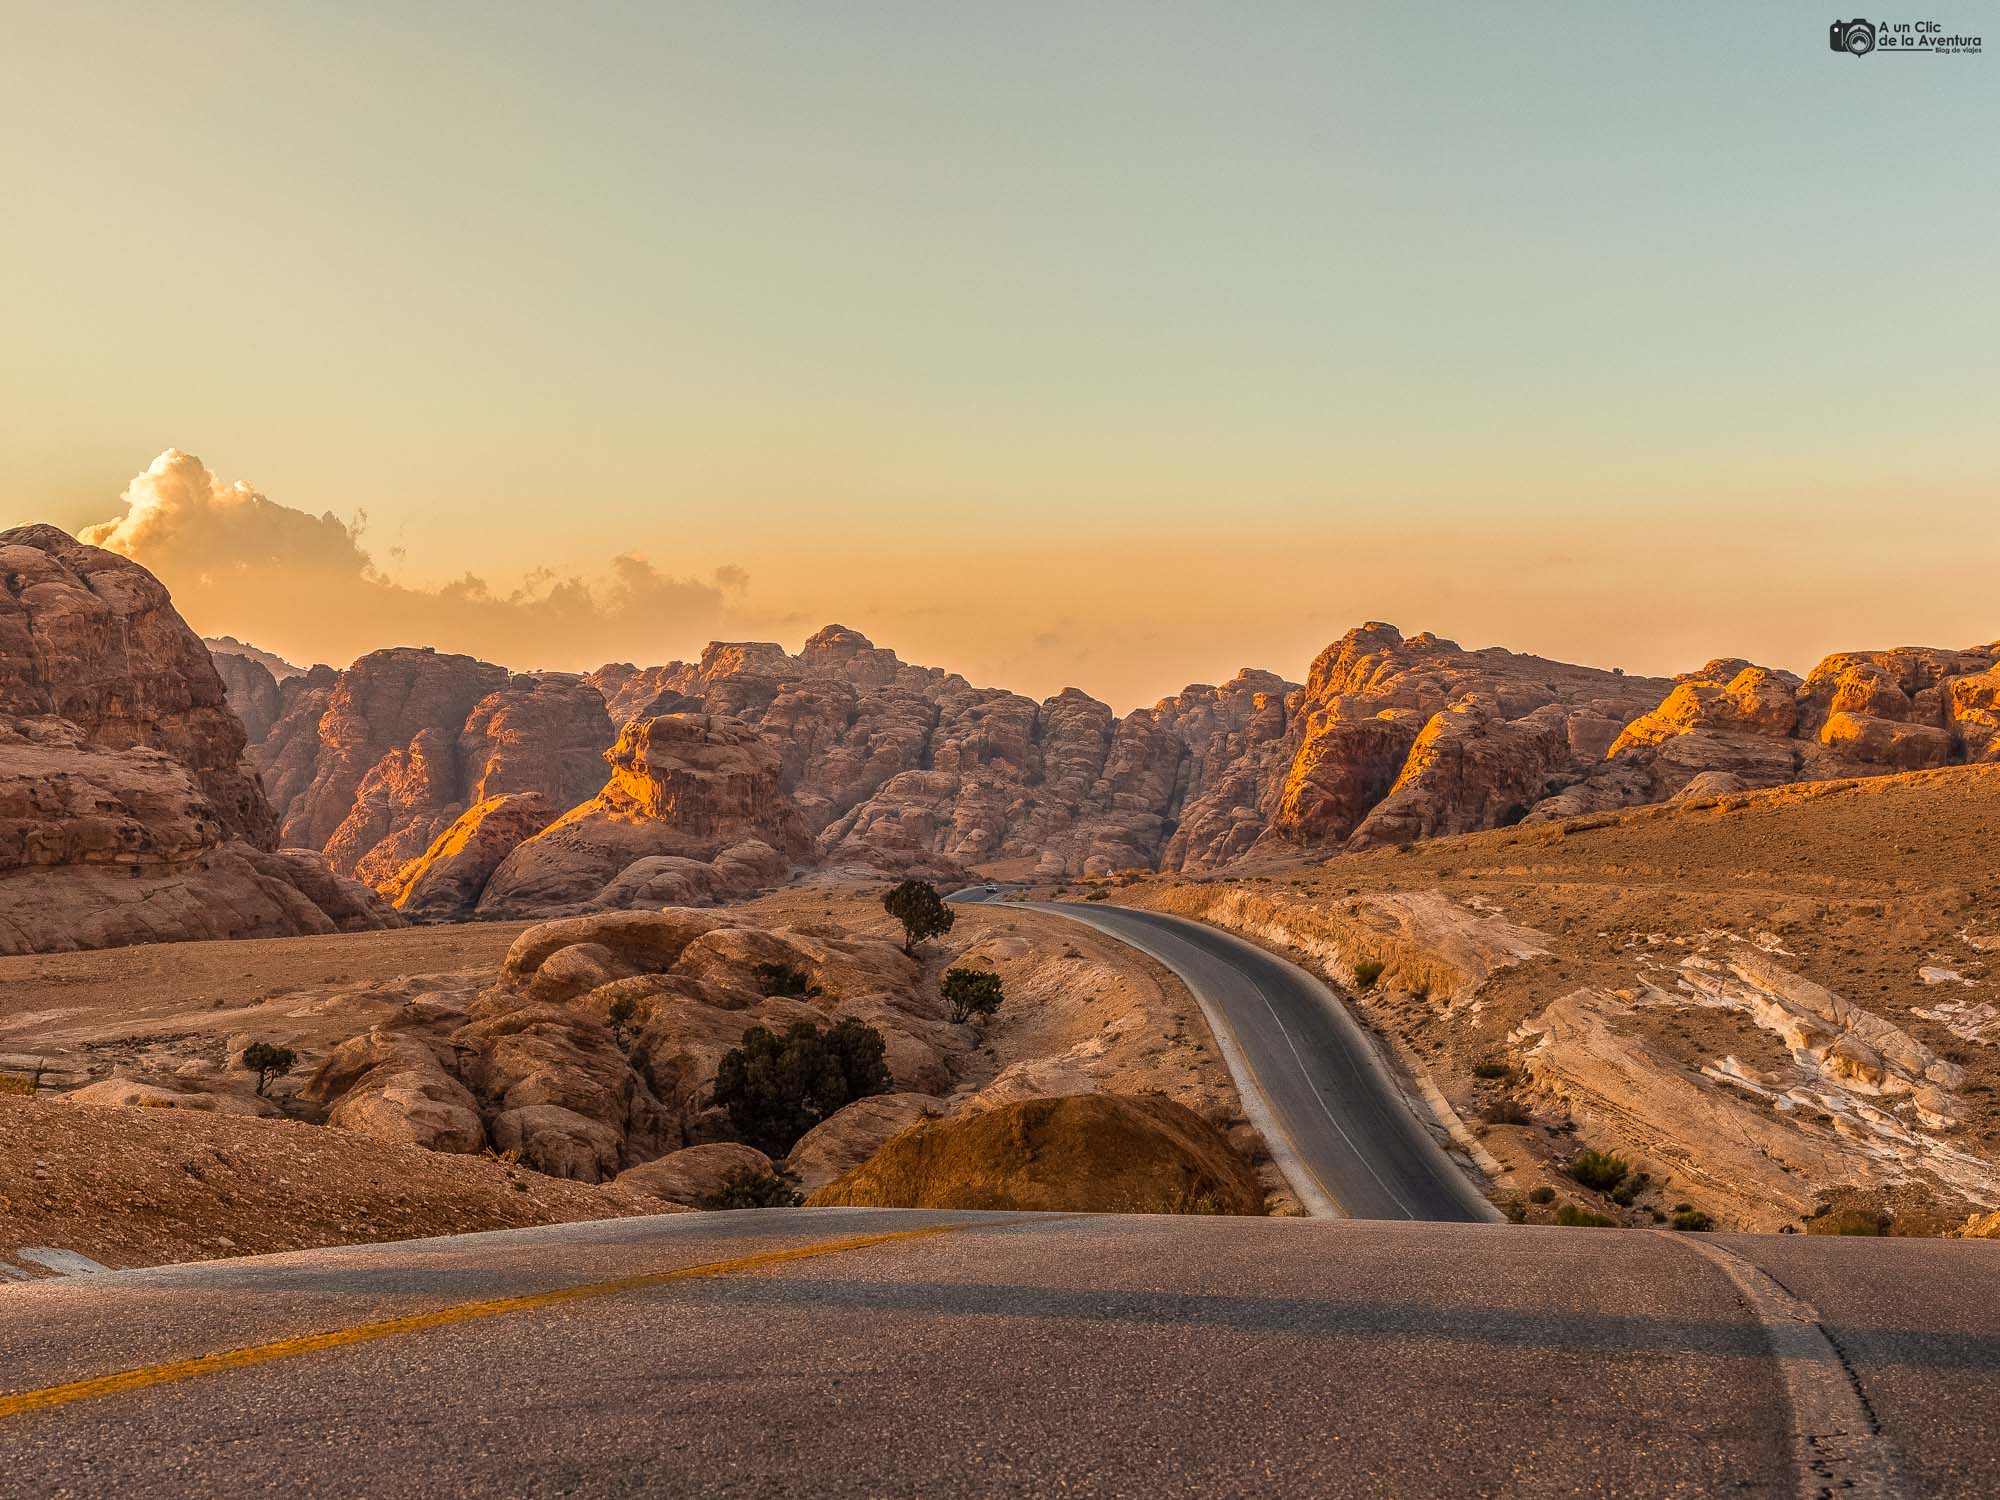 Carretera de Jordania cerca de Petra, que ver en Jordania